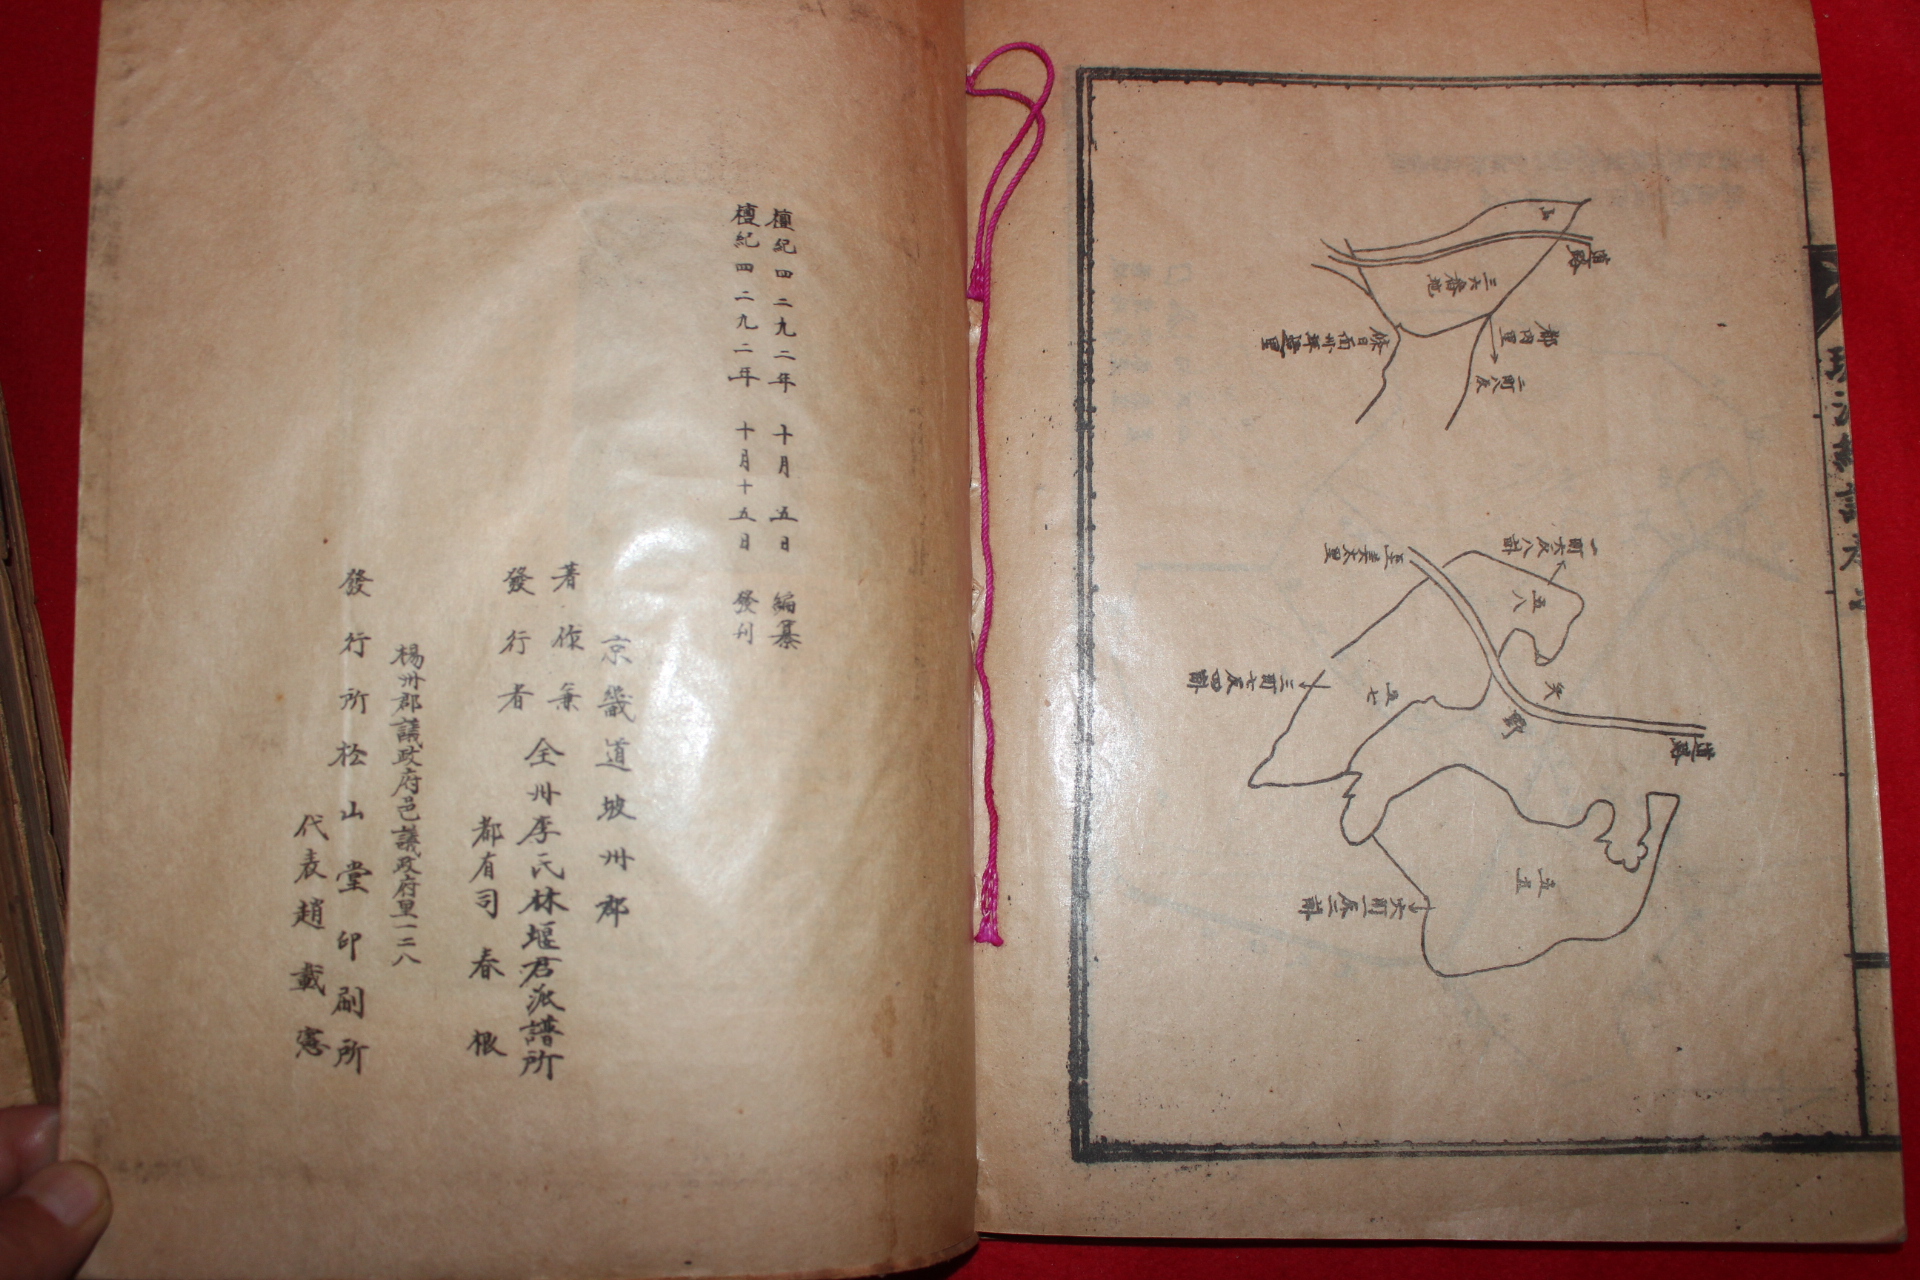 1959년 전주이씨선원속보(全州李氏璿源續譜) 4책